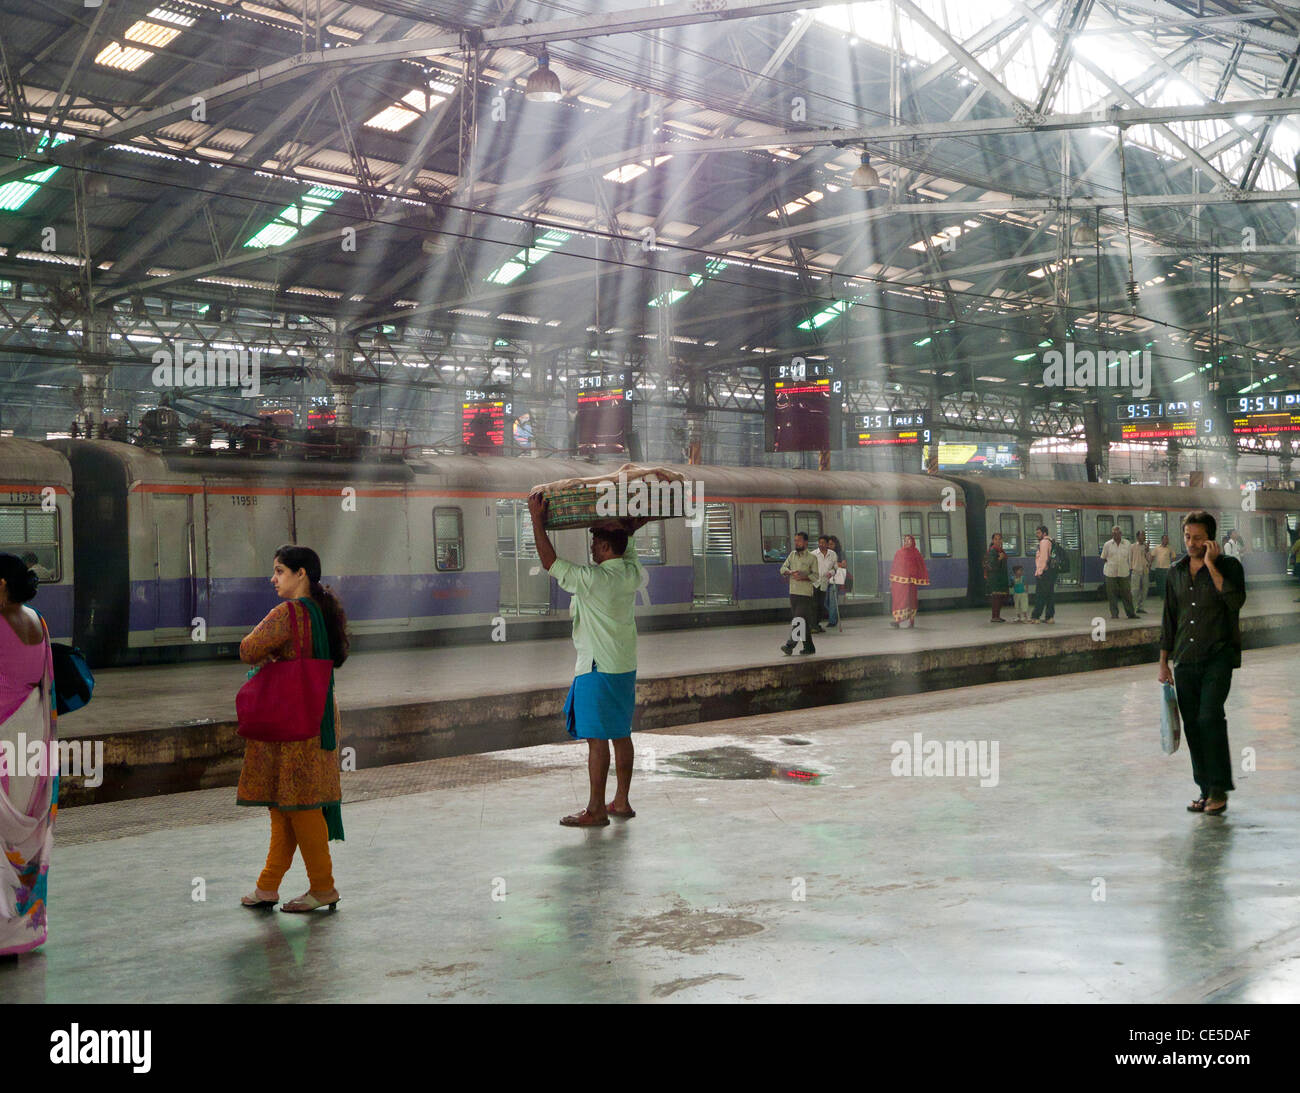 Personnes sur une plate-forme à l'intérieur de la Gare Chhatrapati Shivaji Terminus précédemment connu sous le nom de la gare Victoria de Mumbai Inde Banque D'Images